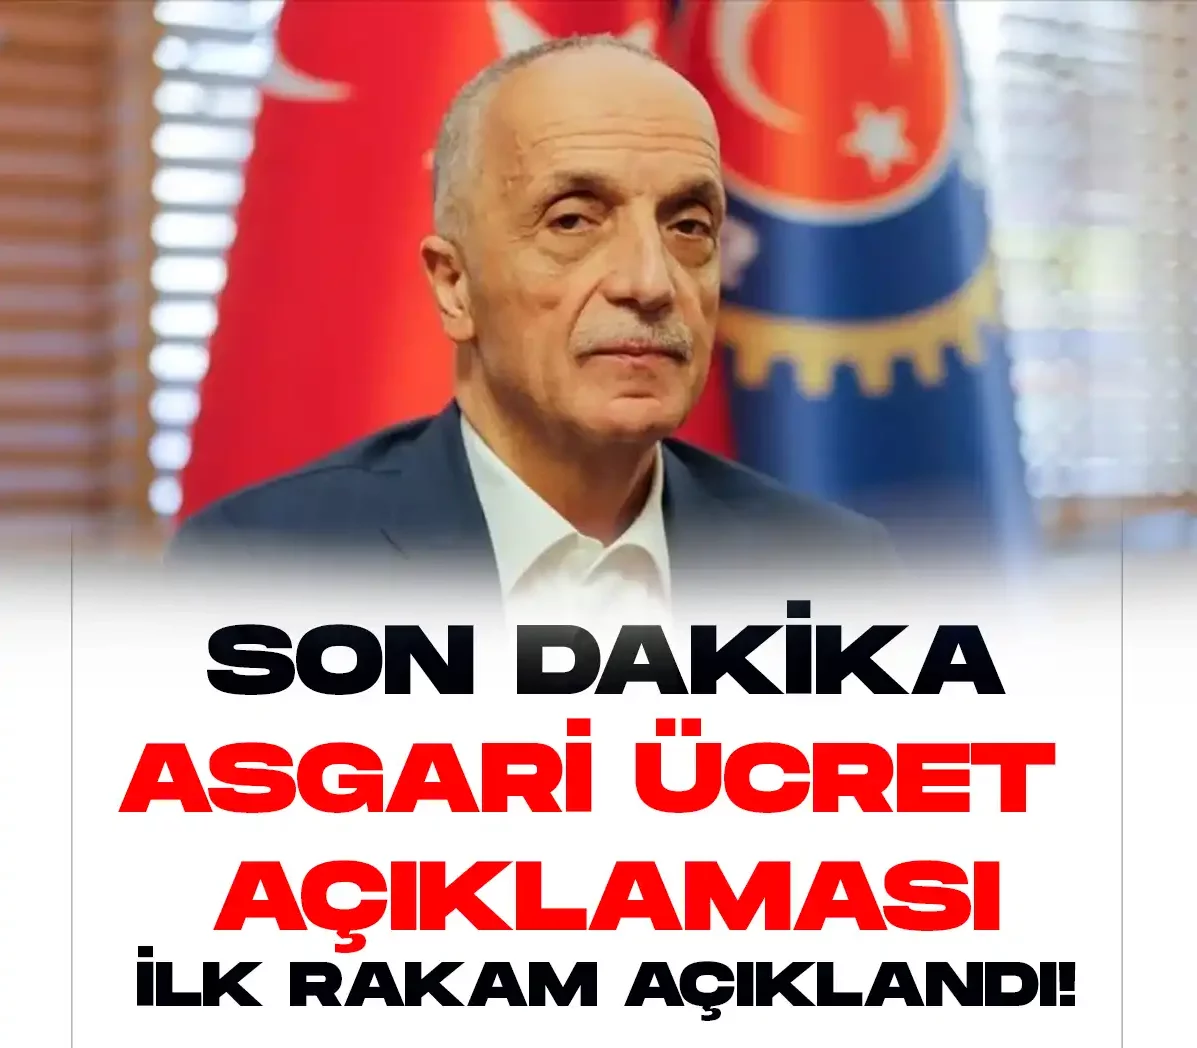 Türk İş Genel Başkanı Ergün Atalay asgari ücret pazarlıklarına 7 bin 785 TLden başlayacaklarını söyledi.